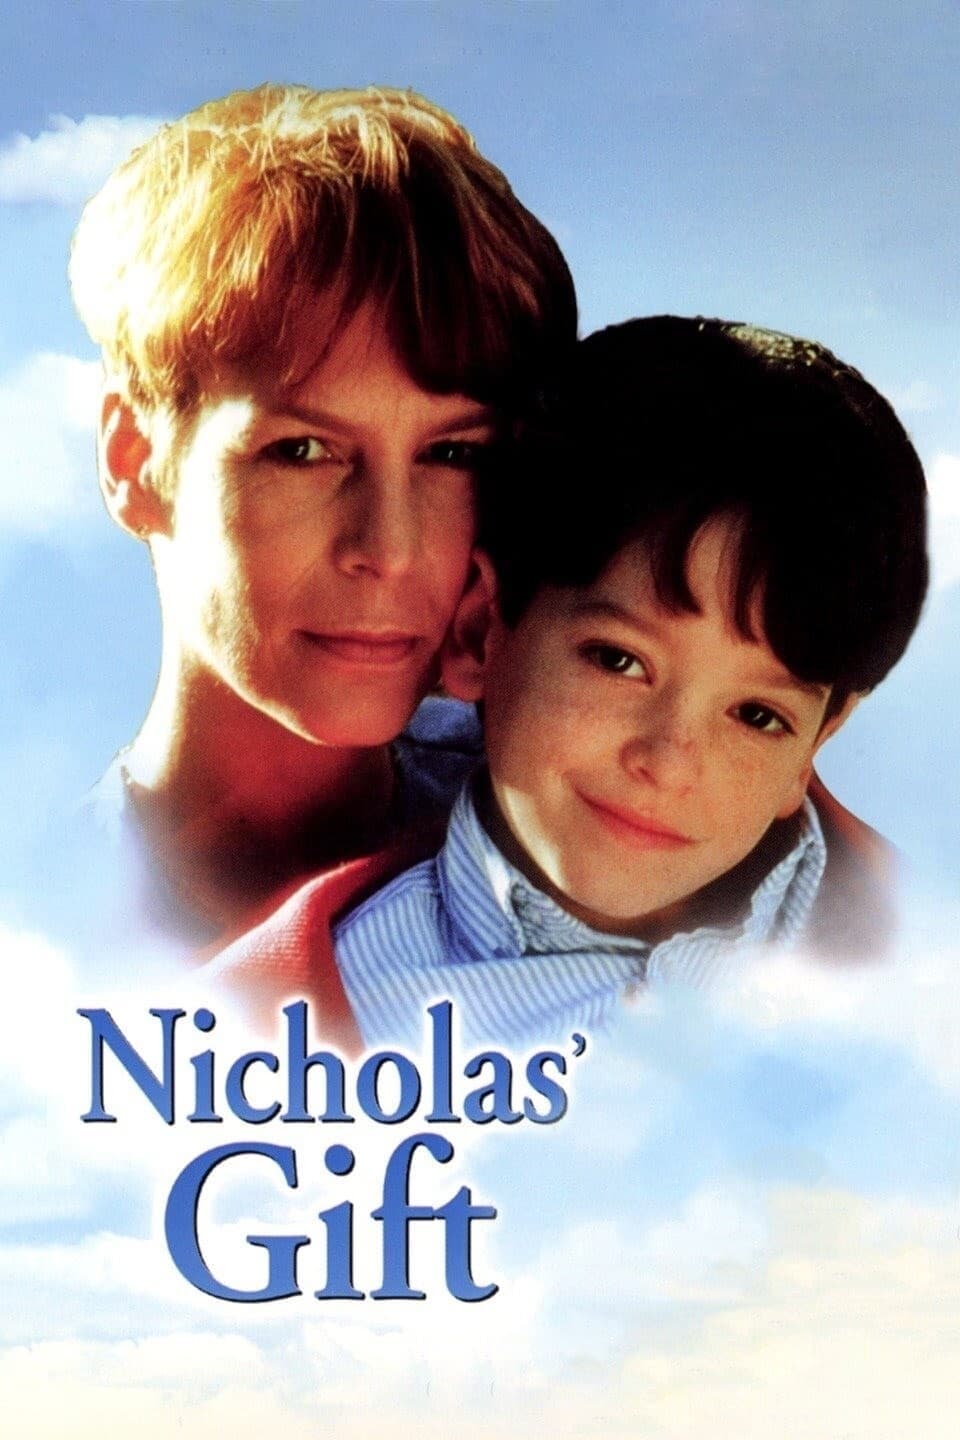 Nicholas’ Gift (1998)